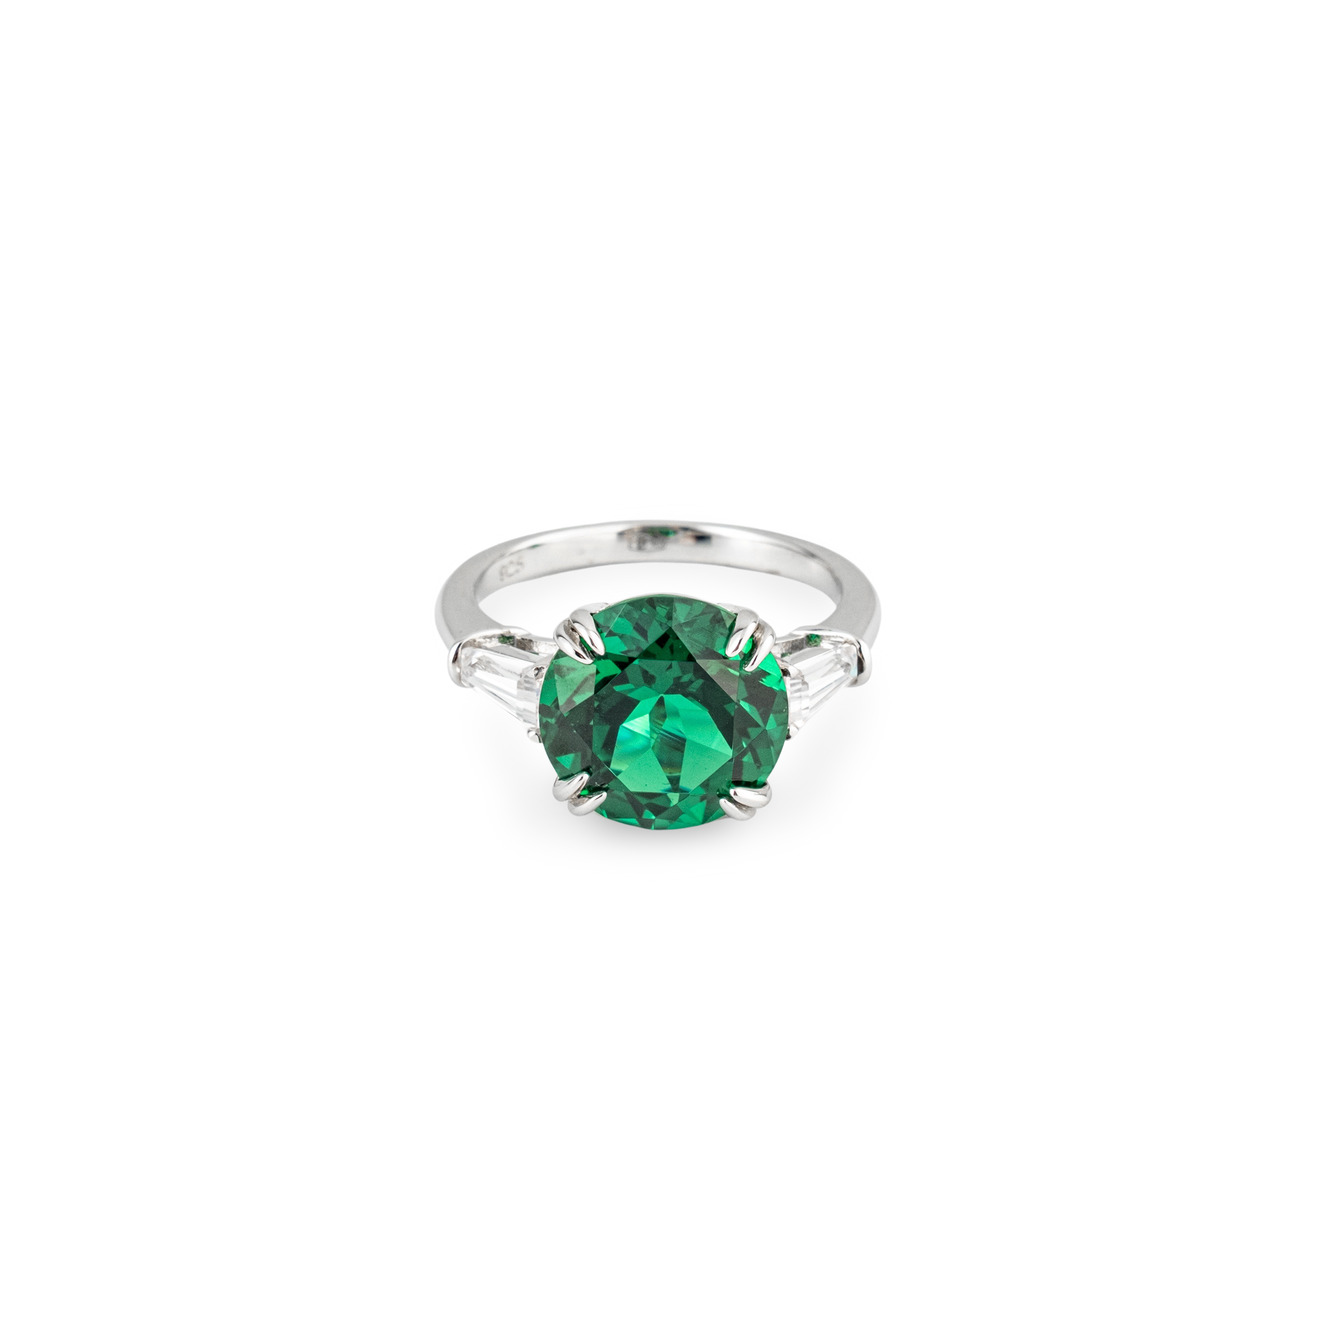 Holy Silver Кольцо из серебра с зеленым кристаллом lisa smith золотистое кольцо с зеленым кристаллом